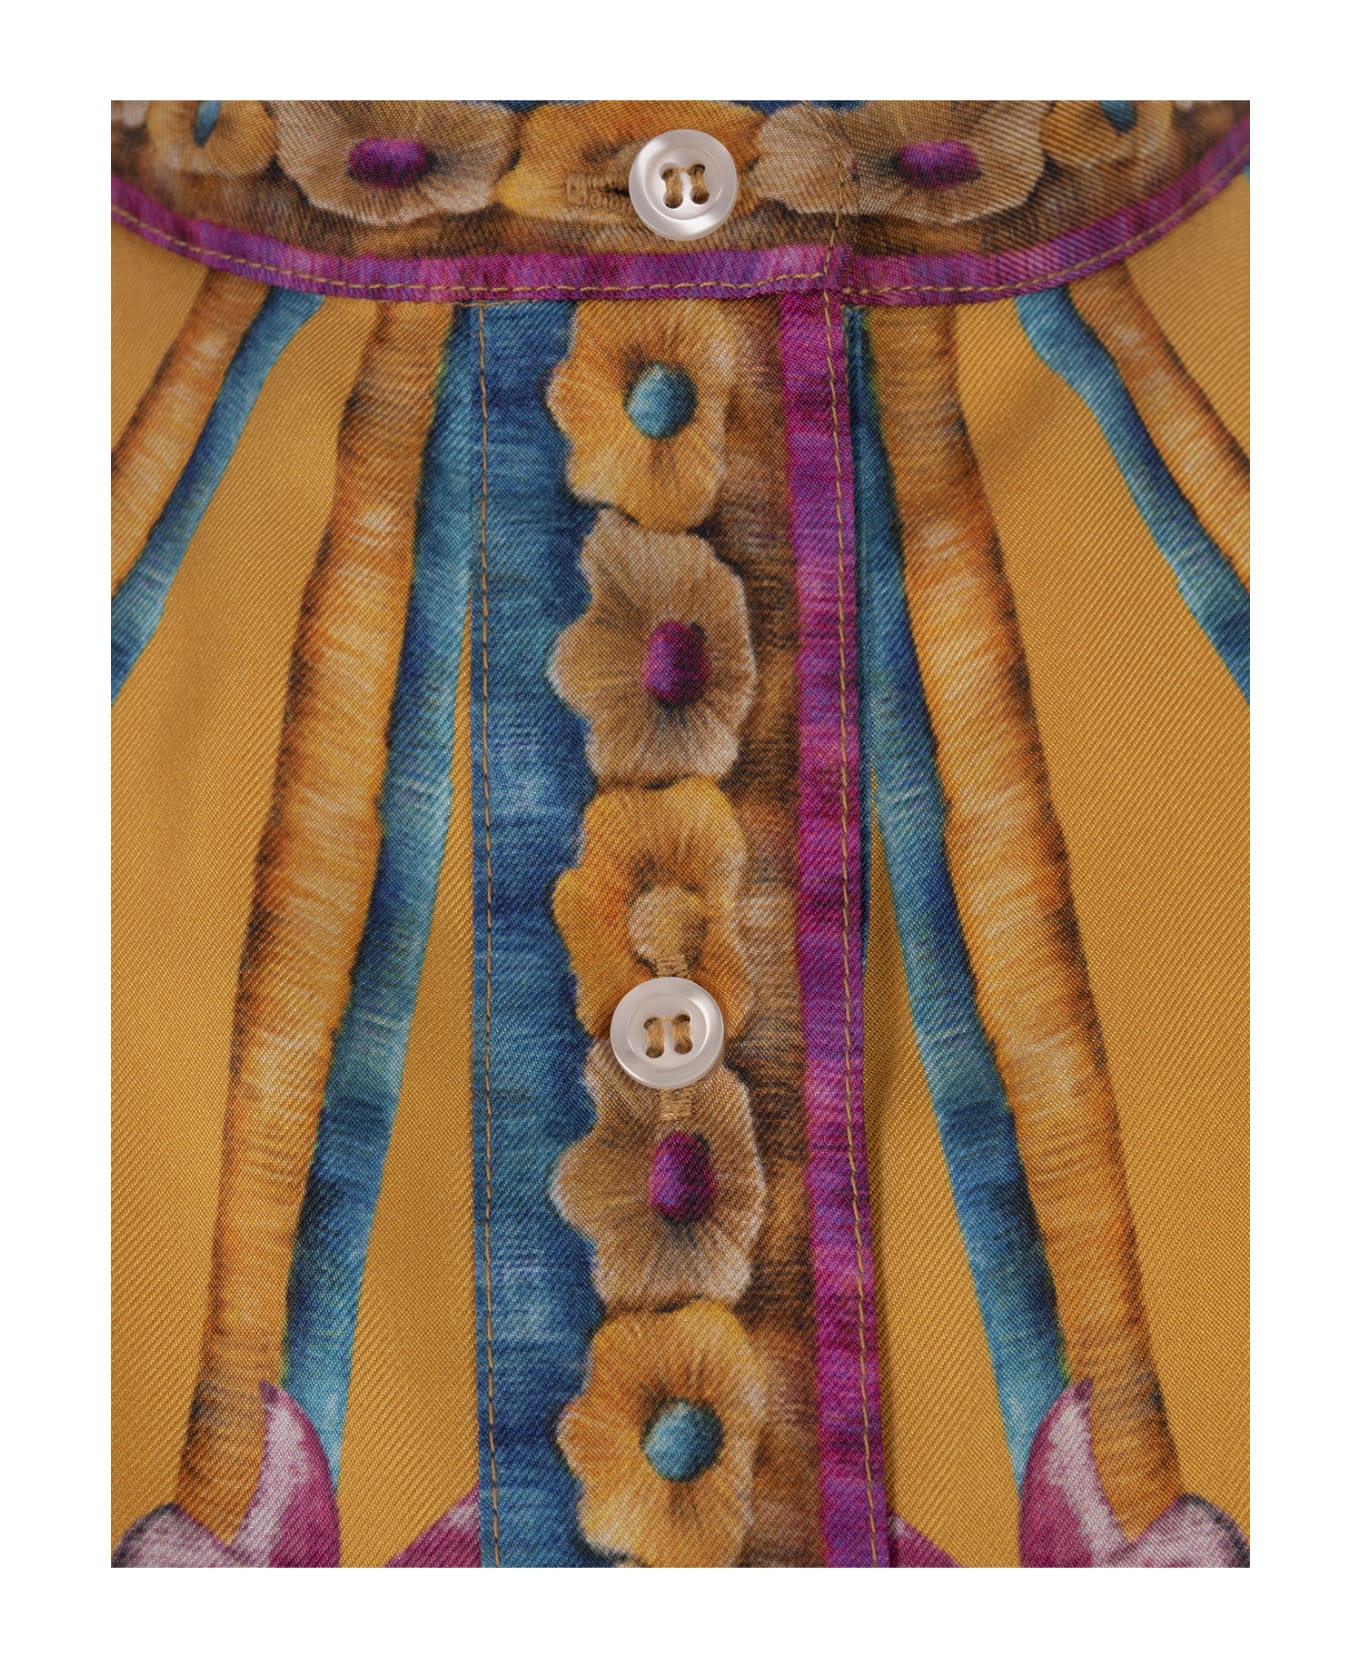 La DoubleJ Zodiac Placée Marigold Foulard Shirt In Silk Twill - Multicolour ブラウス